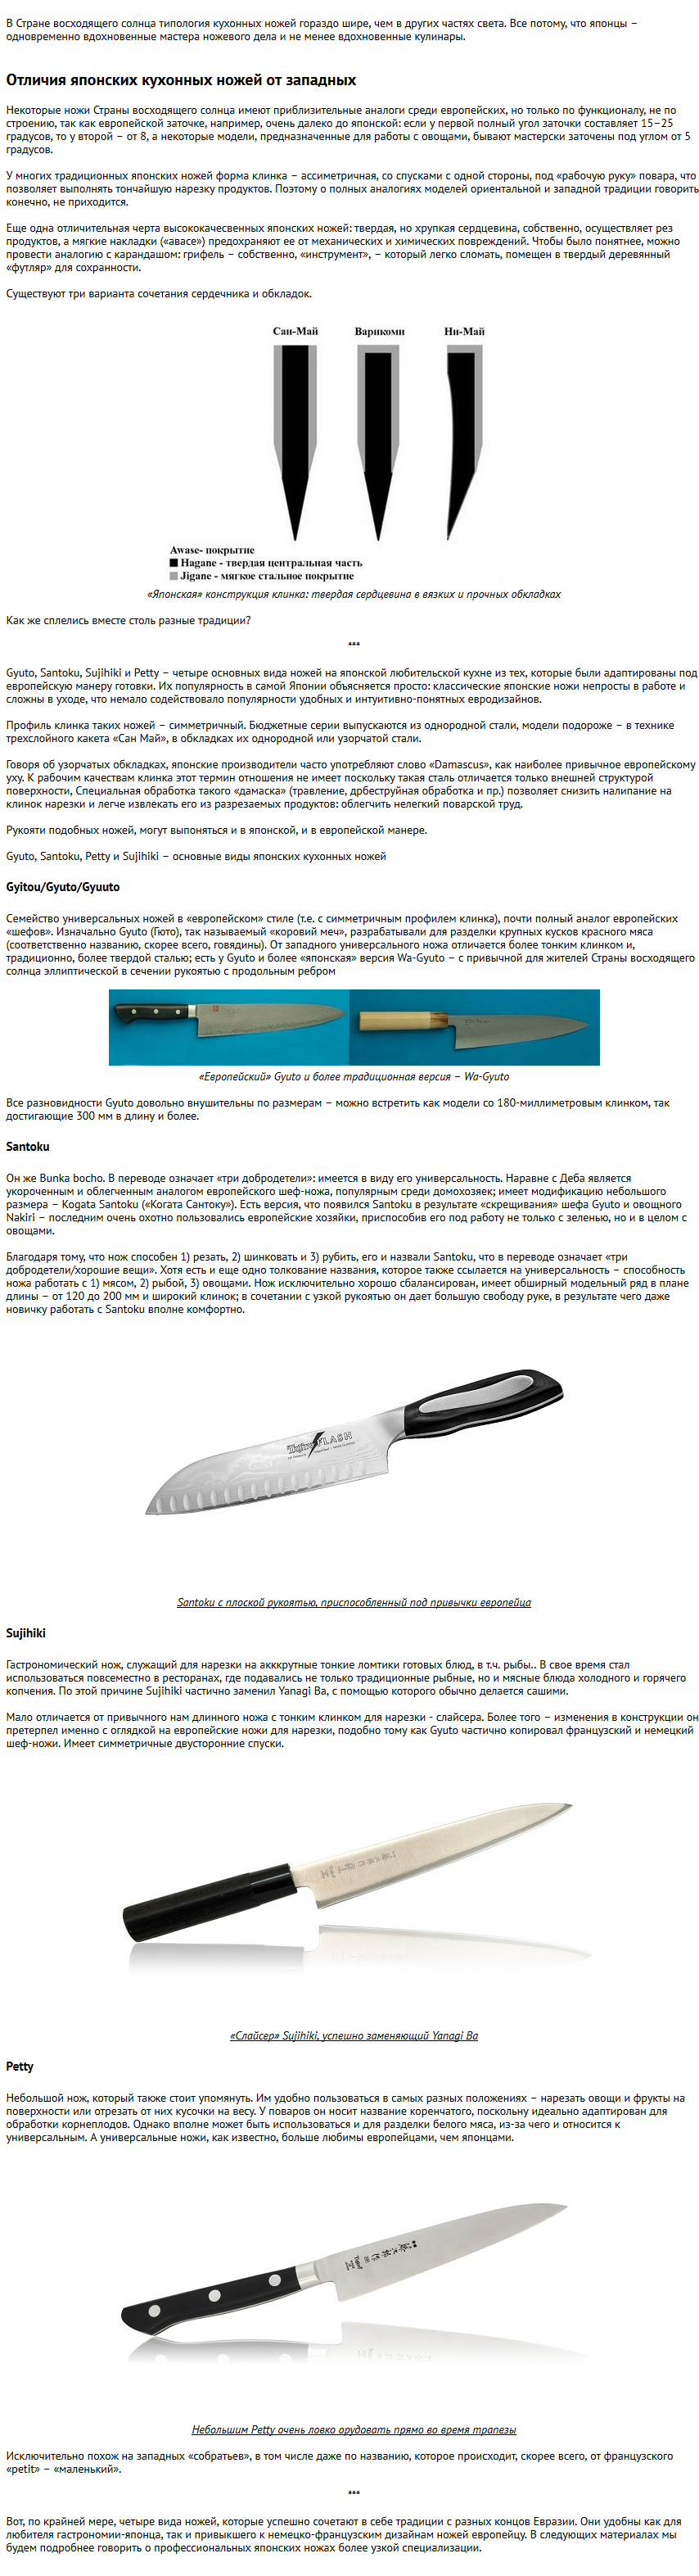 Пример статьи для интернет-магазина ножей